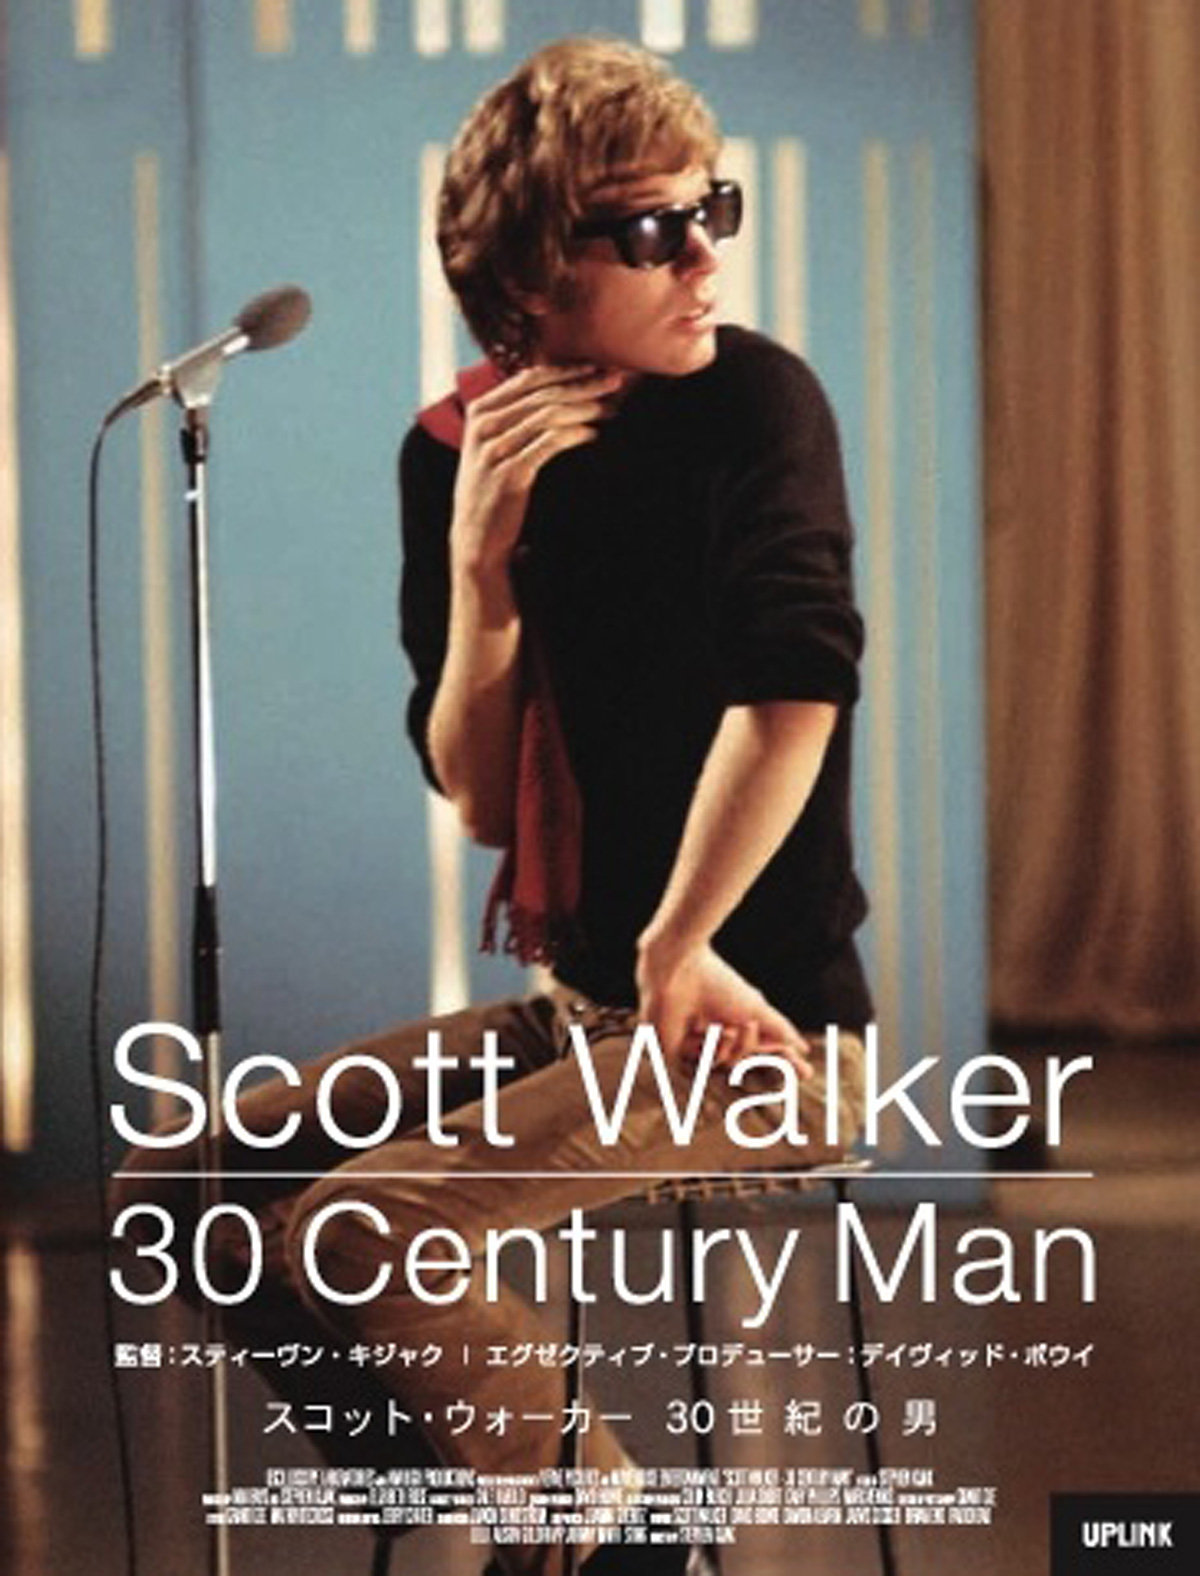 スコット・ウォーカー 30世紀の男 の映画情報 - Yahoo!映画